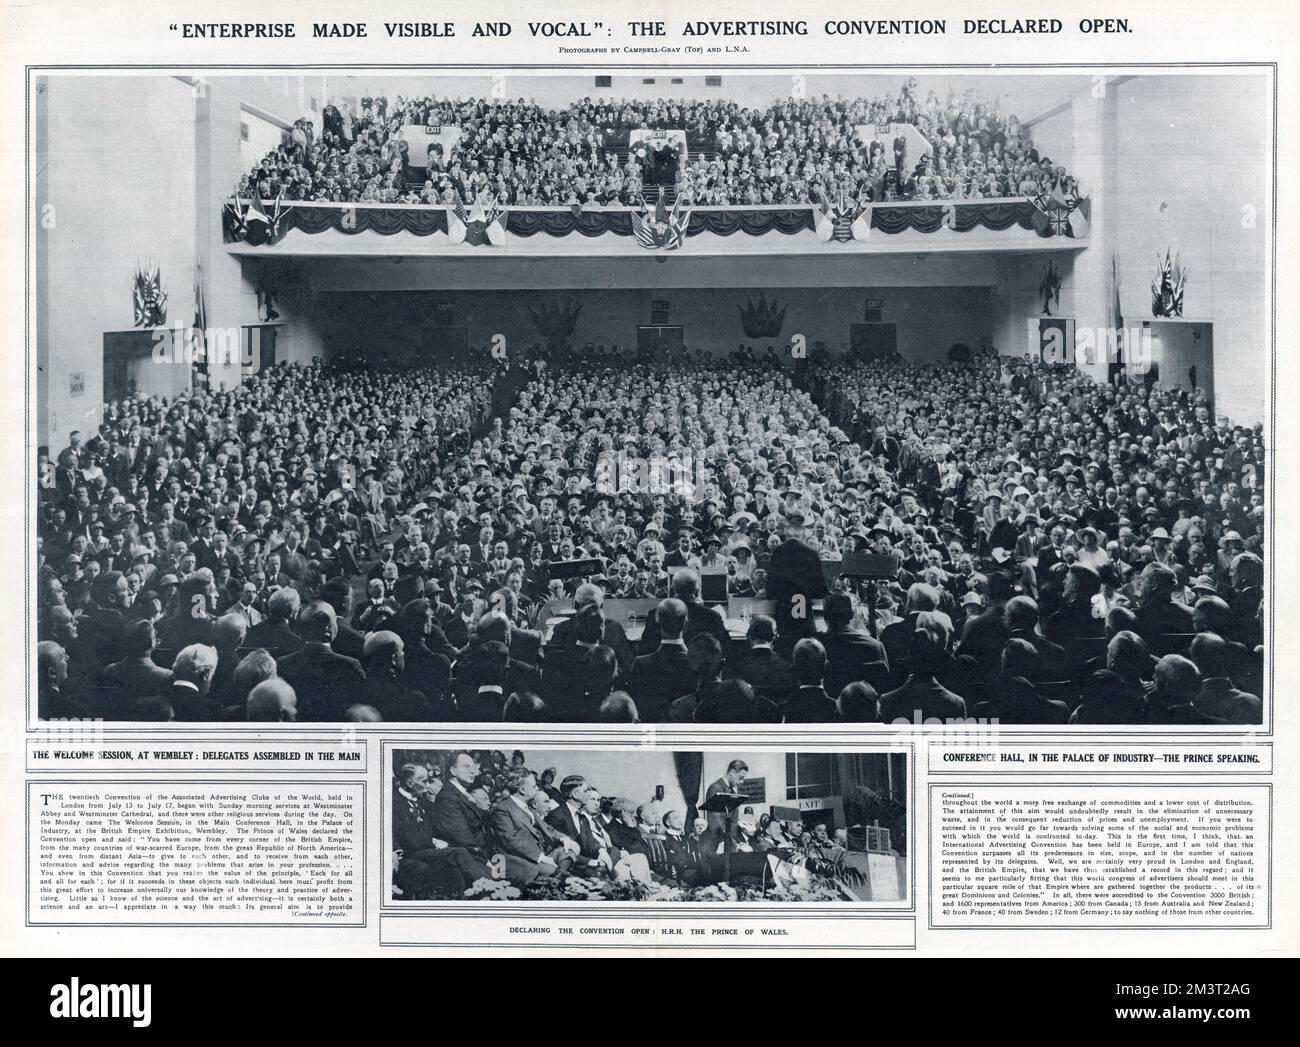 La Convenzione Internazionale di Pubblicità, che dichiara aperta la Convenzione S.R.H. il Principe del Galles a Wembley, Londra. Foto Stock